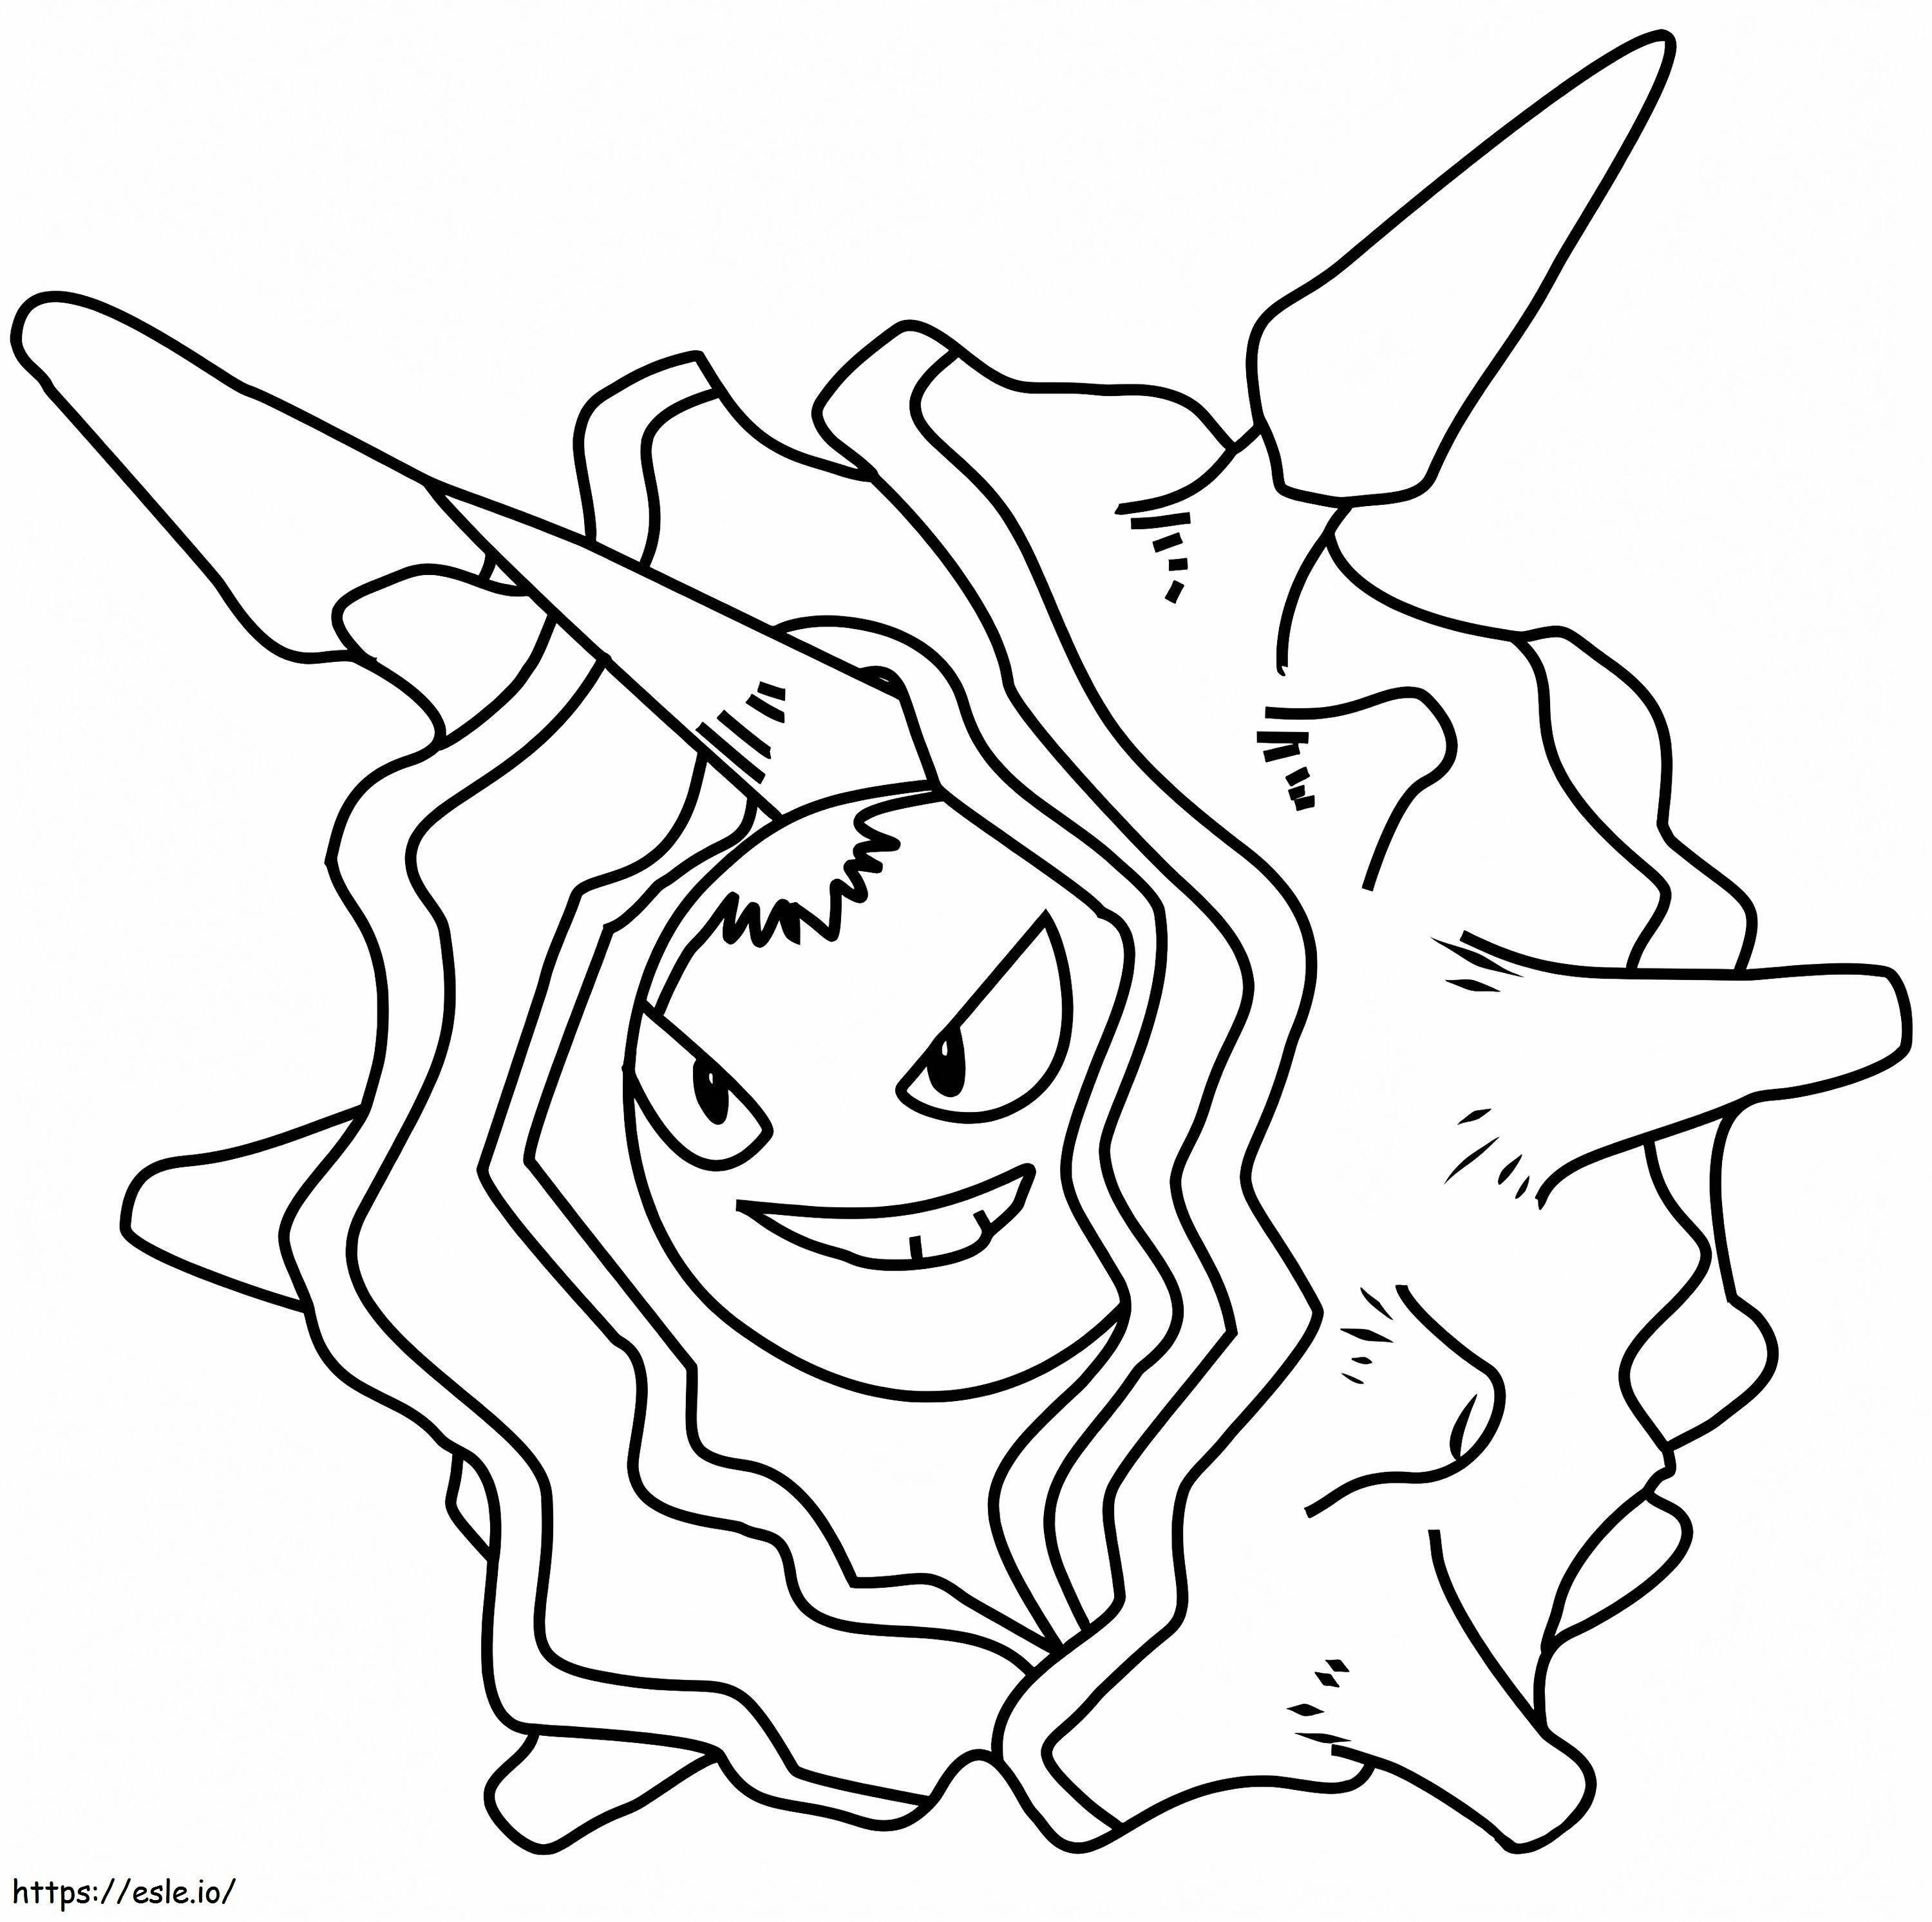 Coloriage Pokémon Cloyster Gen 1 à imprimer dessin